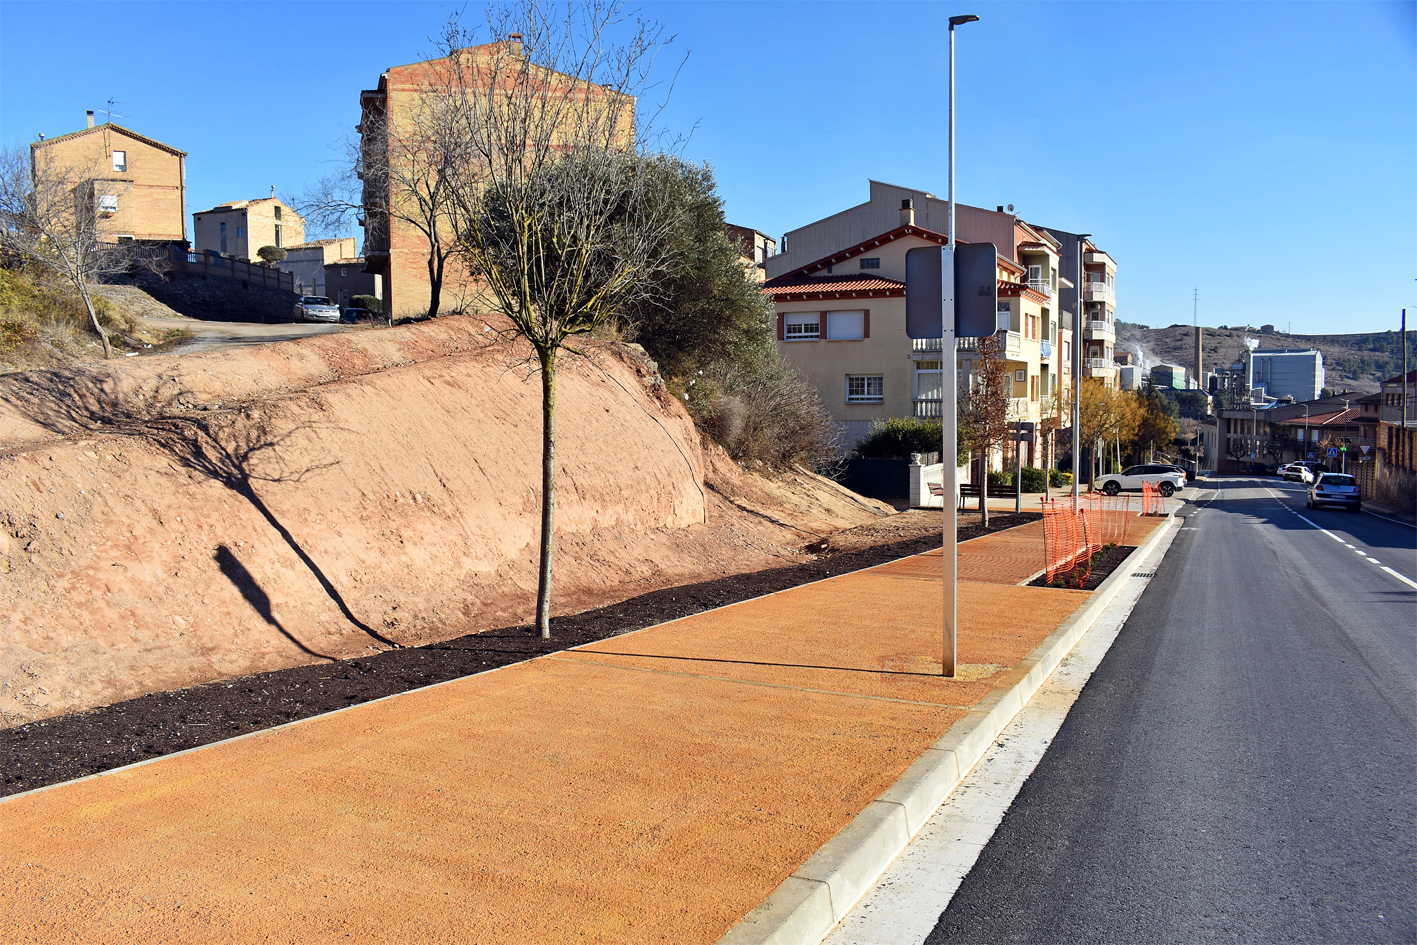 Els barris de Santa Maria i Bellavista ja disposen d'un accés renovat amb nova vorera, passos de vianants i altres millores de l'entorn